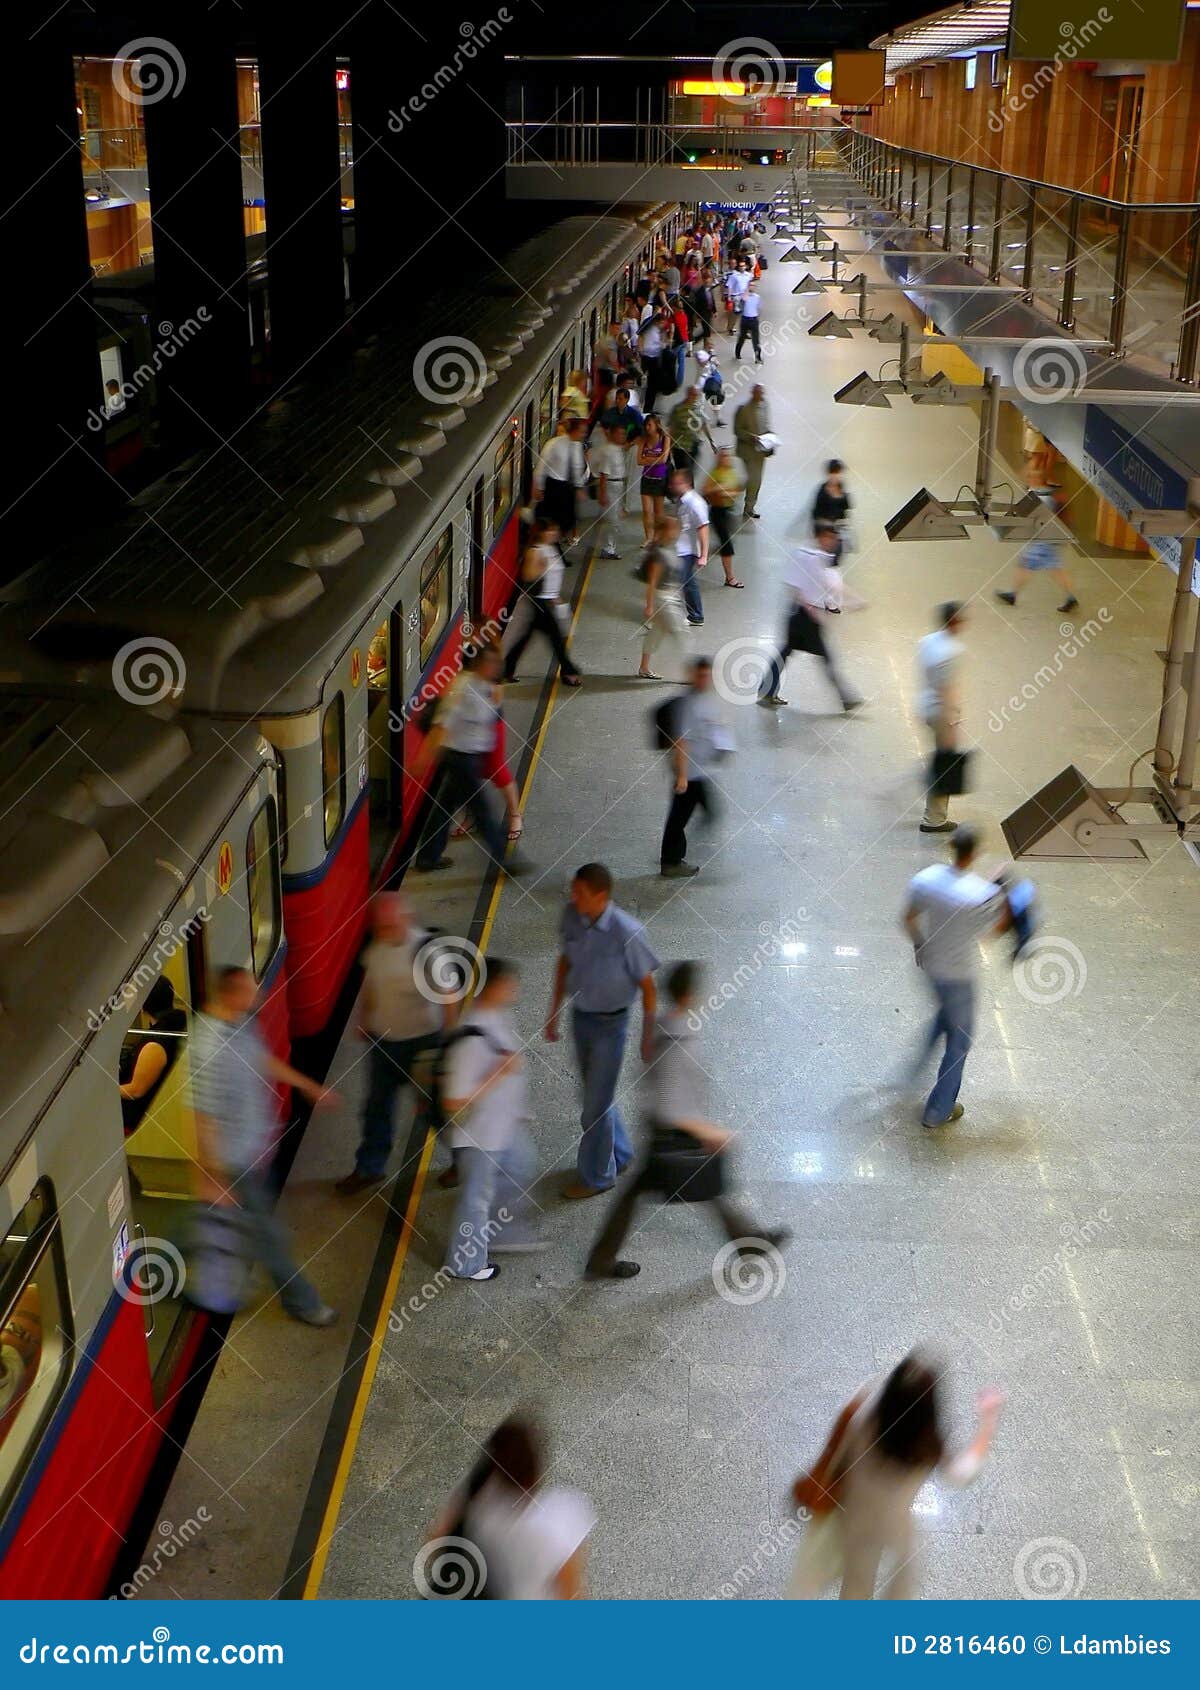 rush hour subway